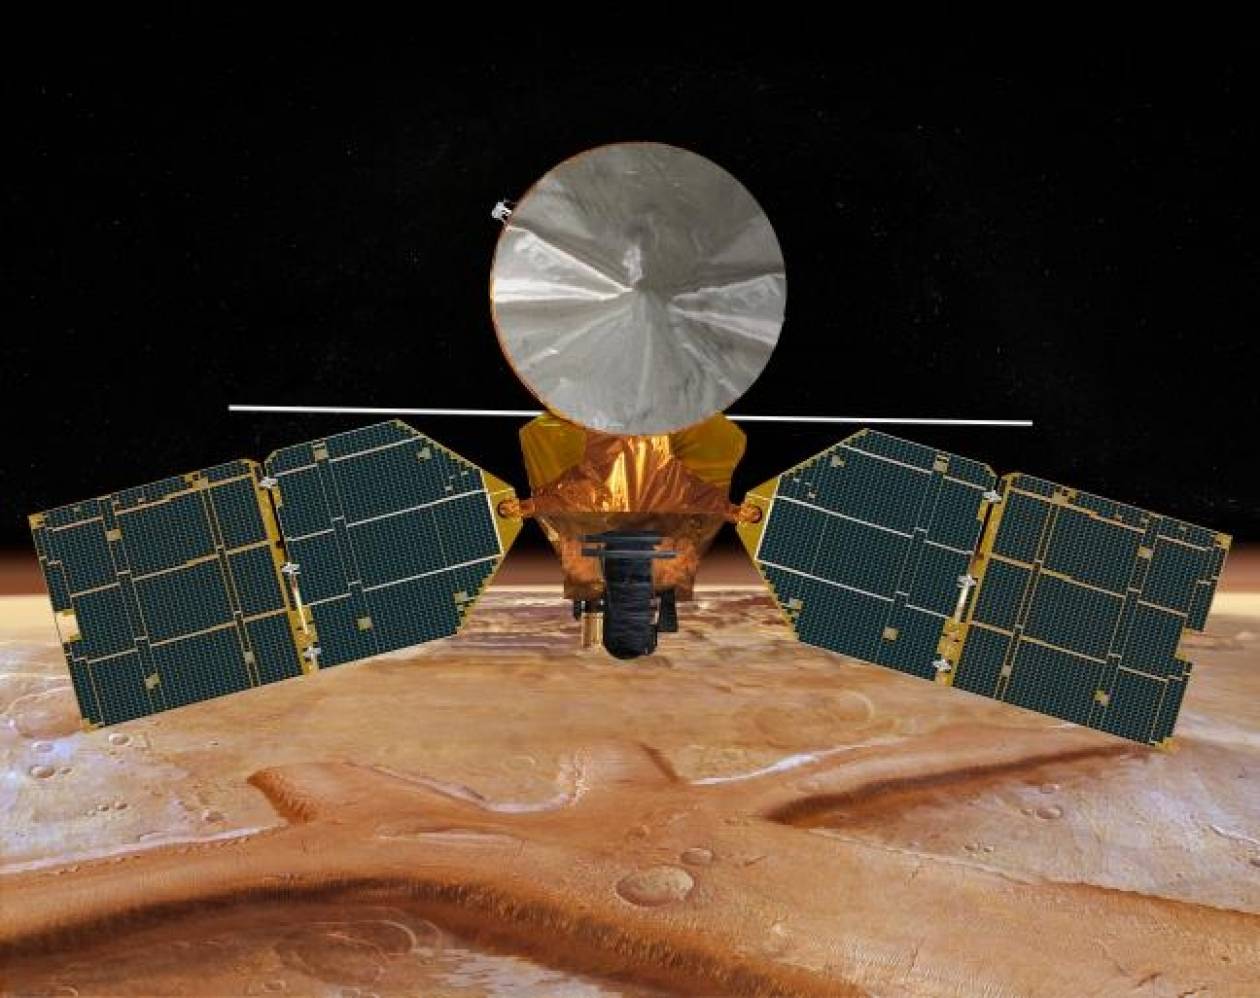 Σε τροχιά γύρω από τον Άρη το όχημα της ινδικής διαστημικής υπηρεσίας